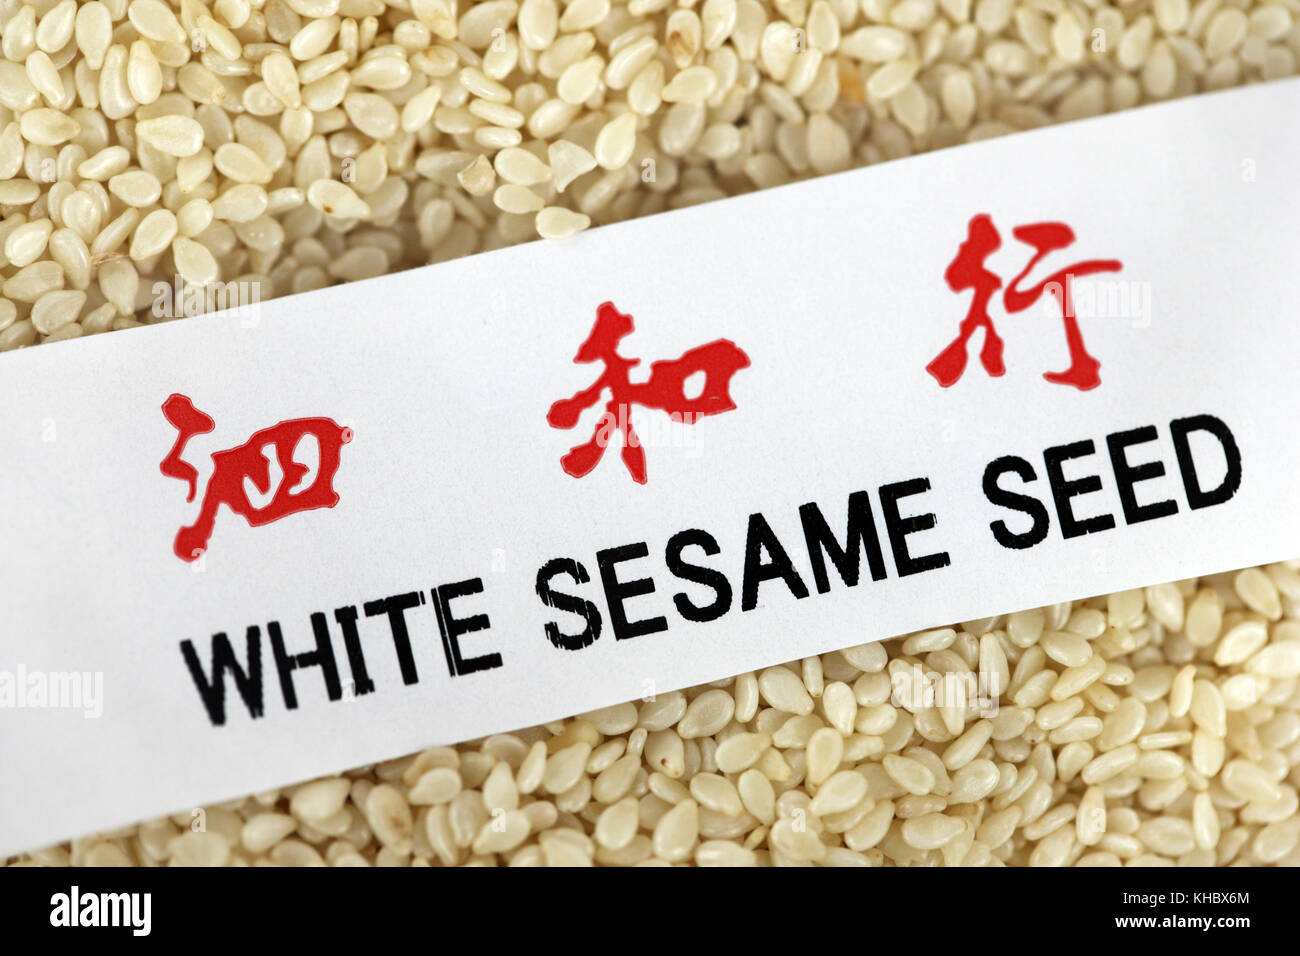 White sesame seeds Stock Photo